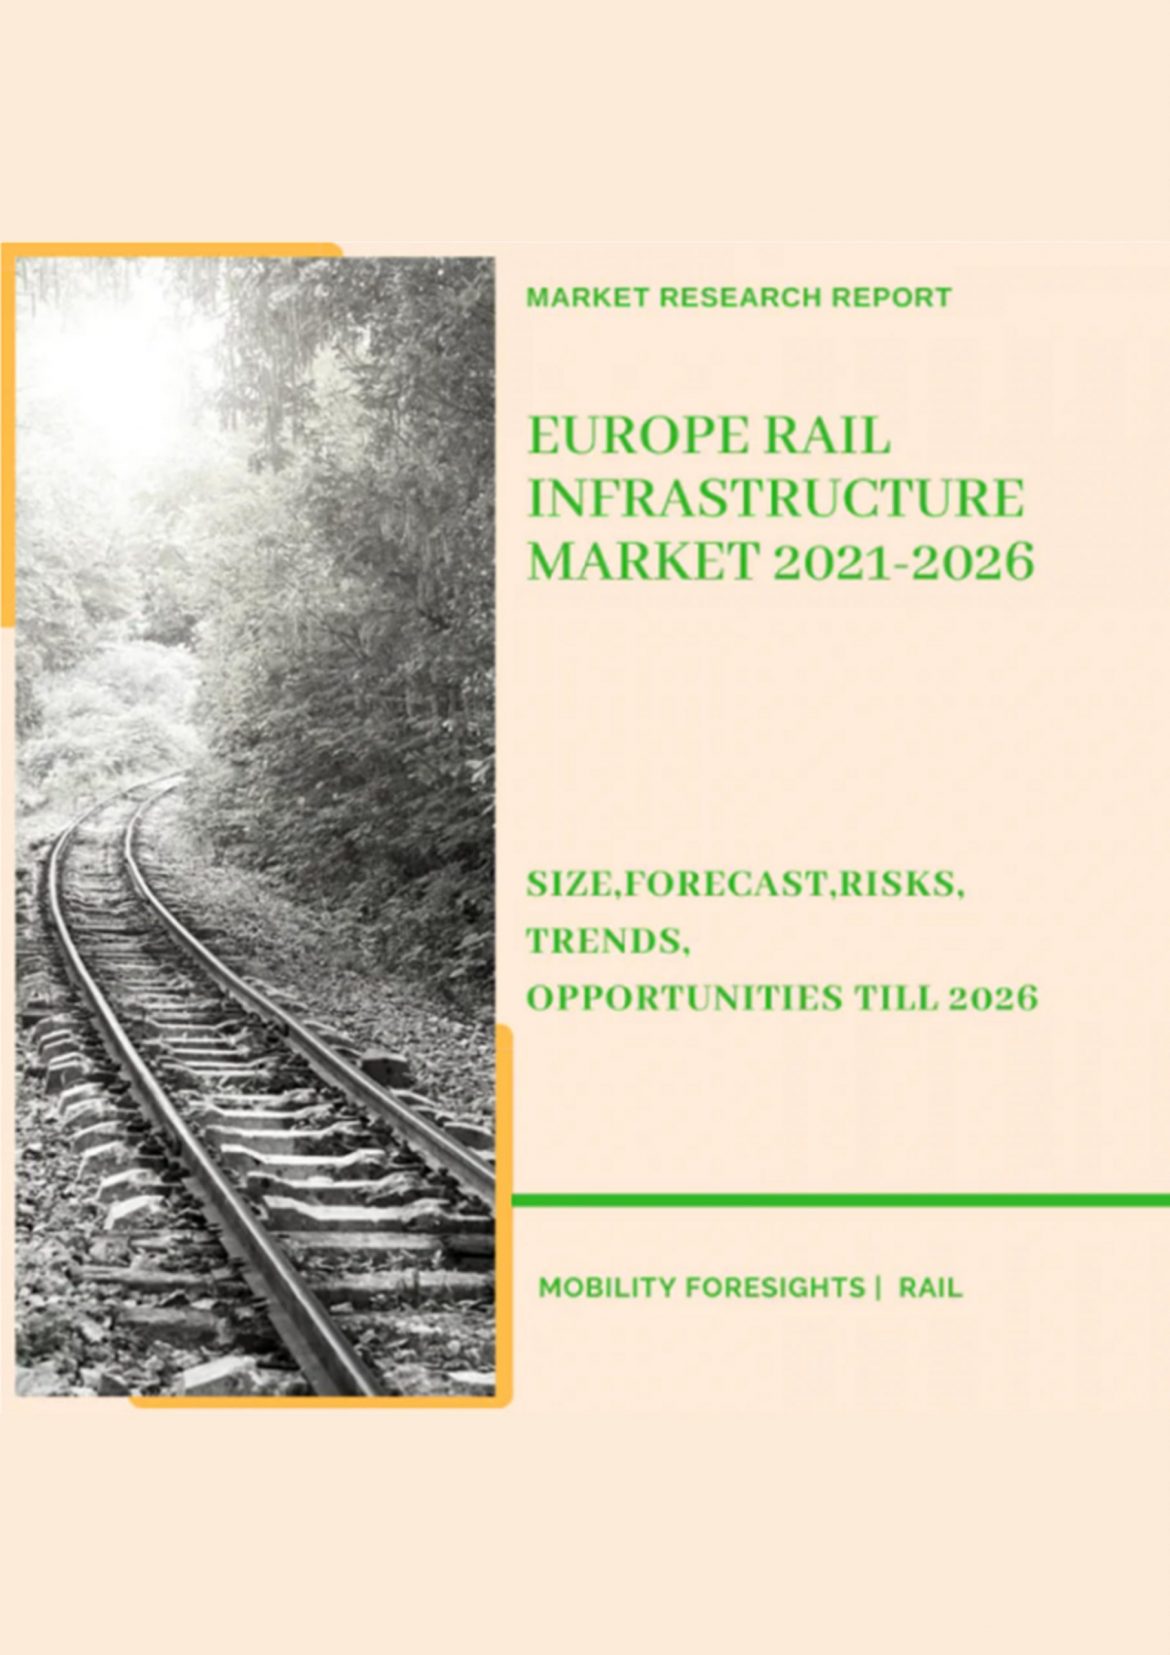 Europe Rail Infrastructure Market 2021-2026